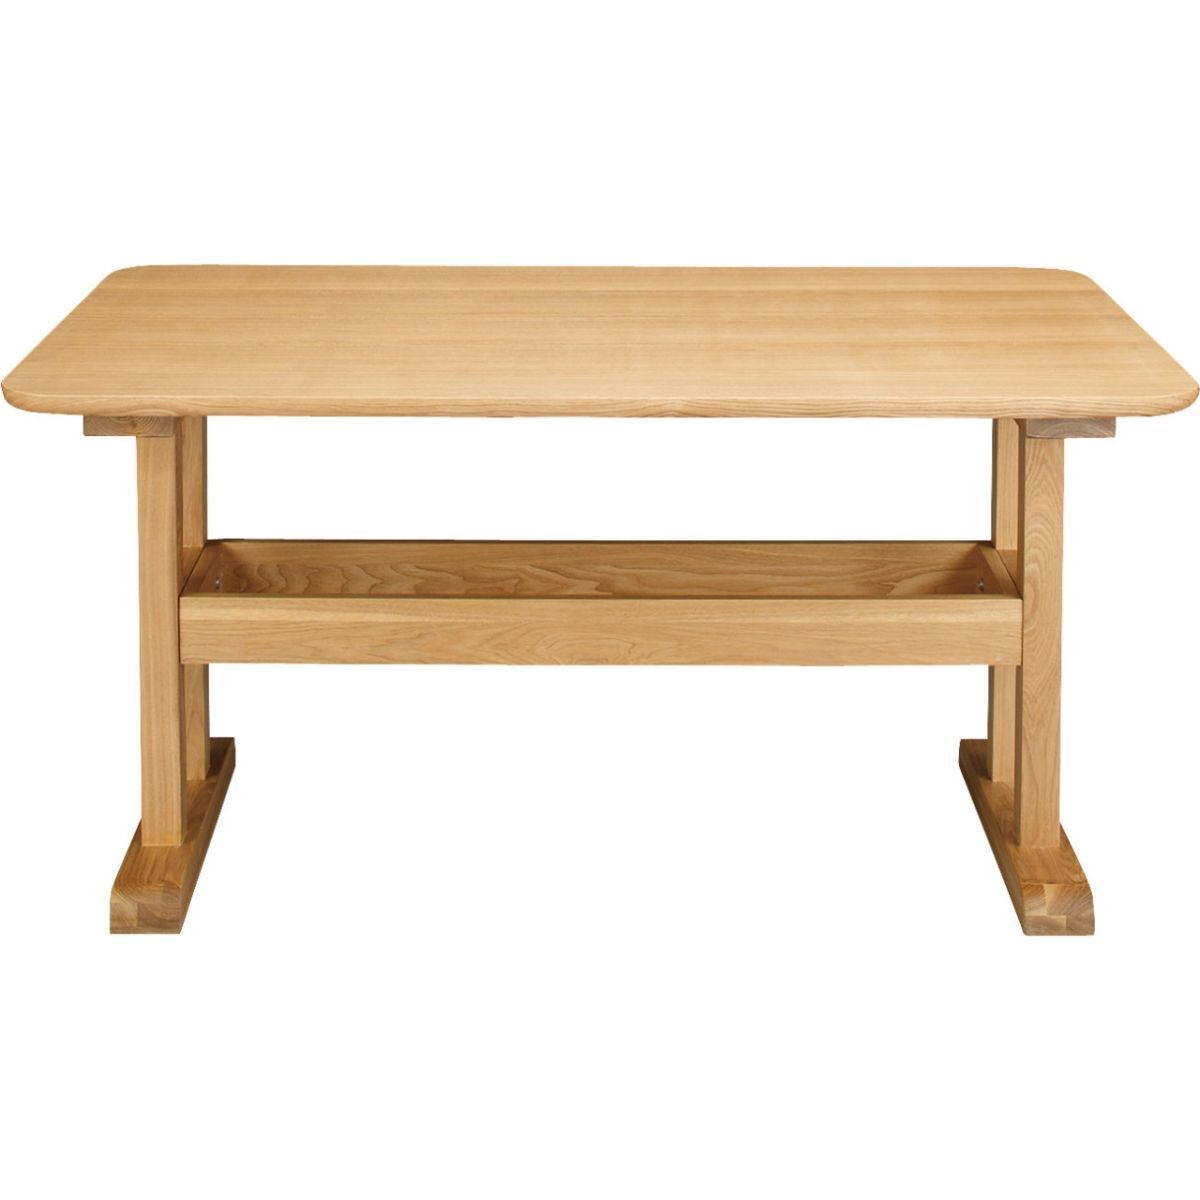 ダイニングテーブル ナチュラル 幅130cm 食卓テーブル テーブル 机 収納 ウッド 木製 天然木 シンプル デザイン 一人暮らし HOT-456NA